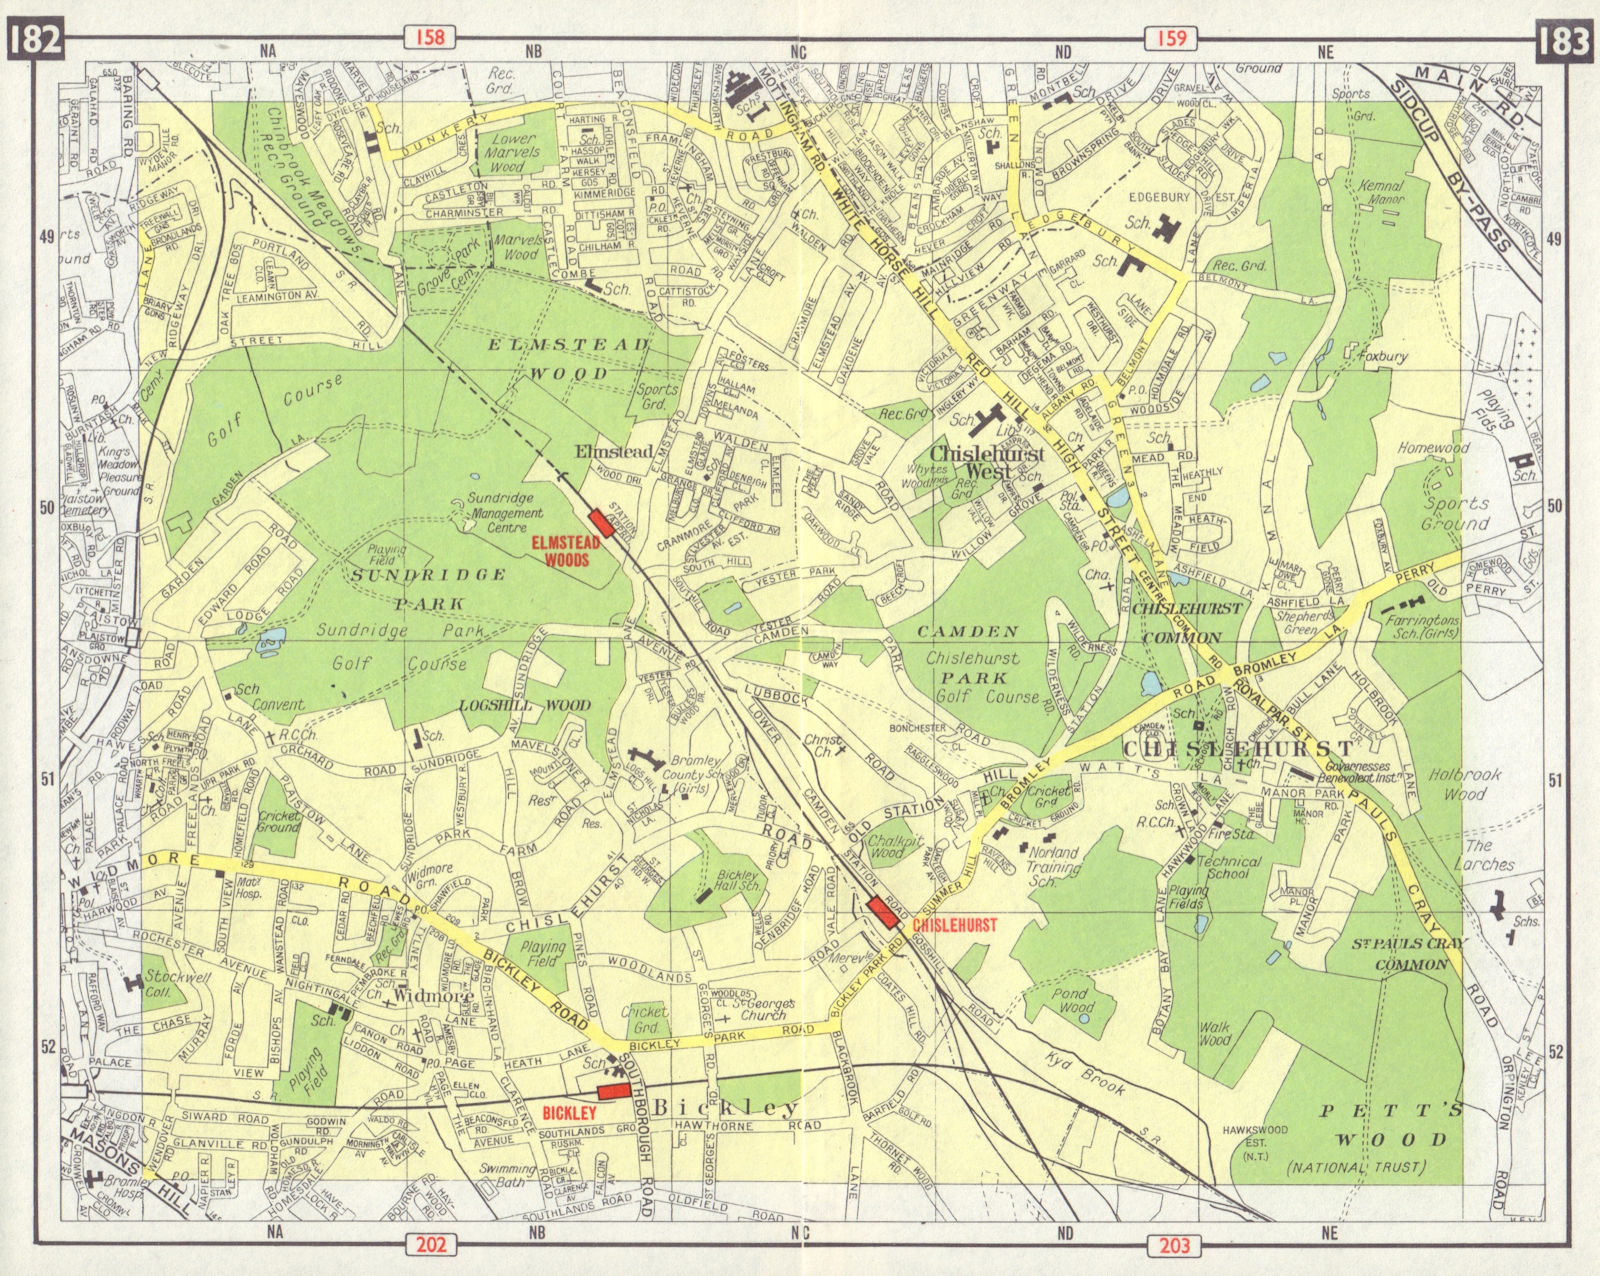 SE LONDON Chislehurst Widmore Bickley Petts Wood Elmstead Pett's Wood 1965 map